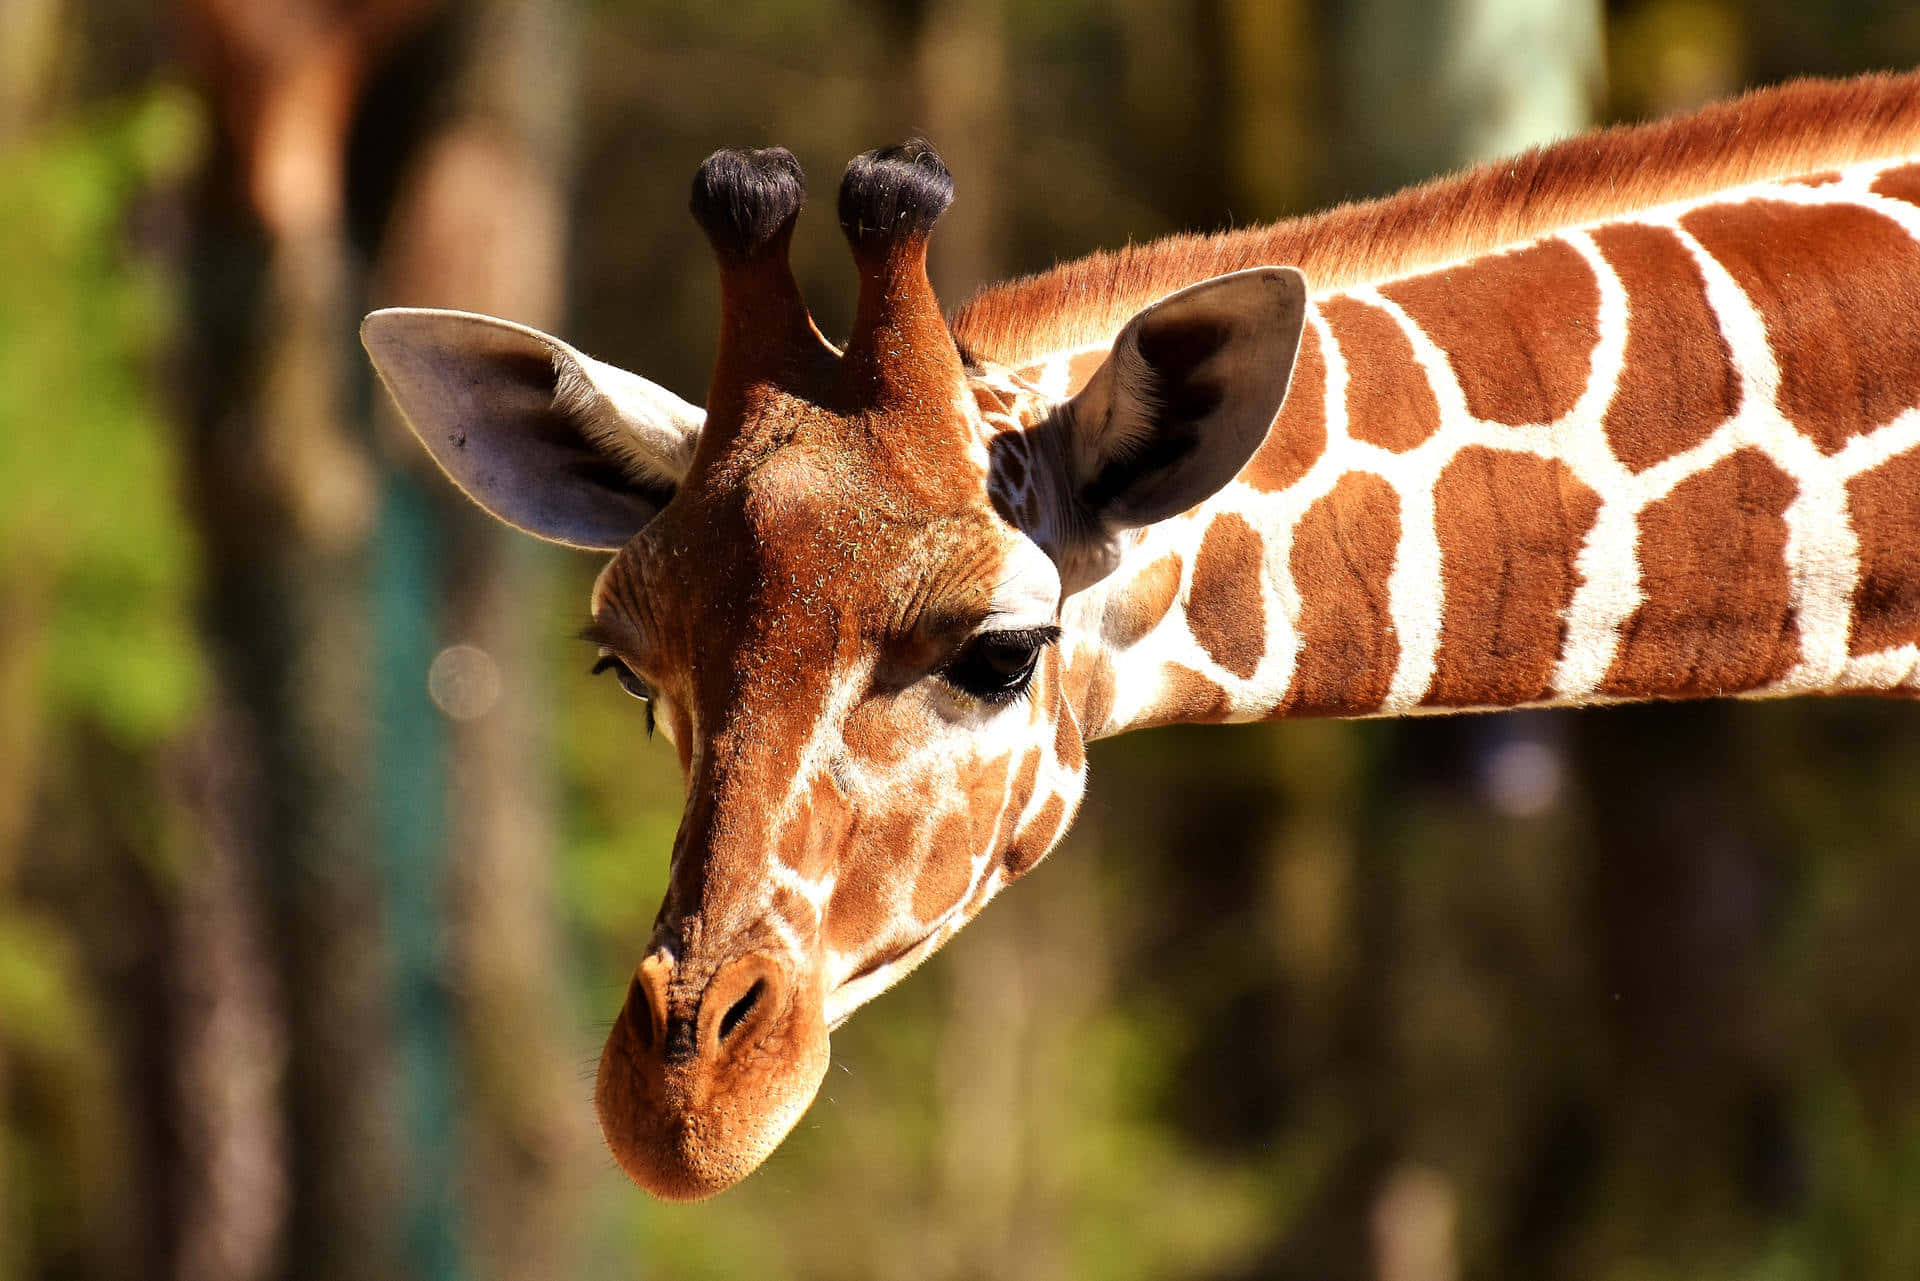 Einewunderschöne Giraffe In Ihrem Natürlichen Lebensraum.